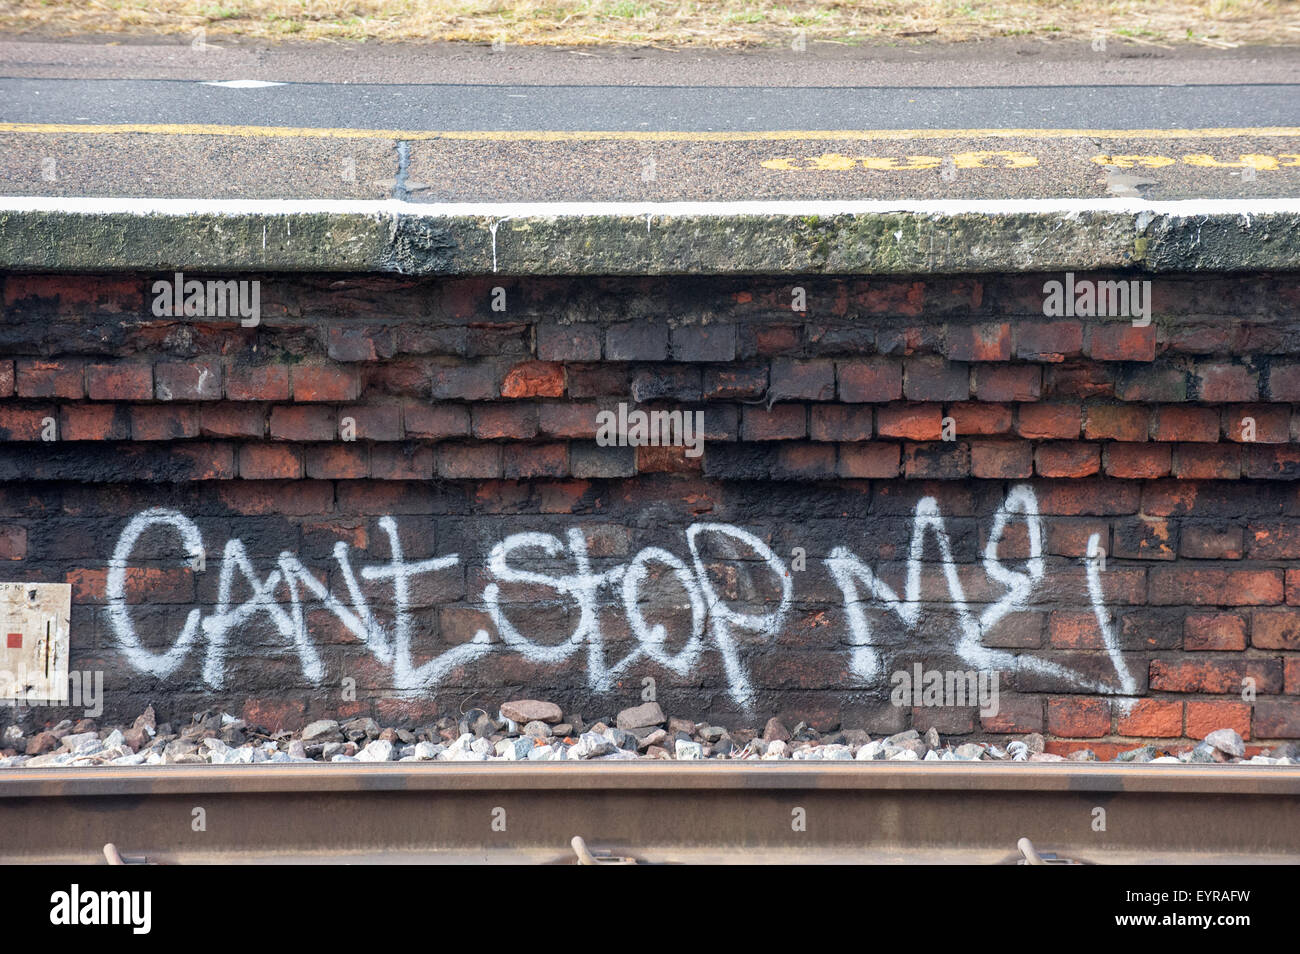 Norbiton station, Surrey. Graffitti "Can't stop me' sotto la piattaforma. Foto Stock